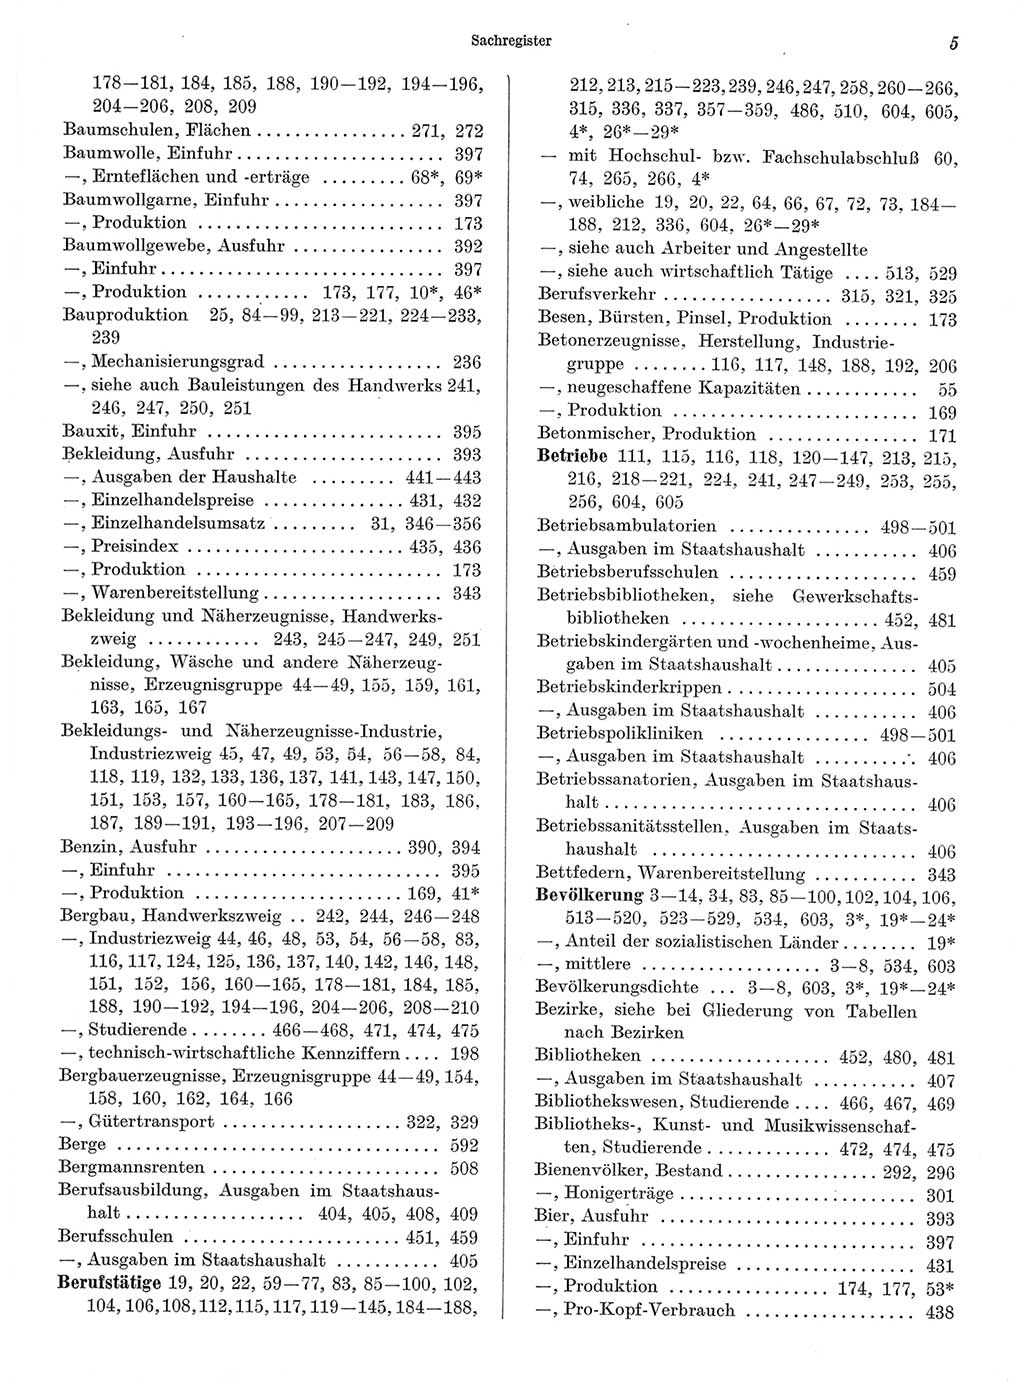 Statistisches Jahrbuch der Deutschen Demokratischen Republik (DDR) 1968, Seite 5 (Stat. Jb. DDR 1968, S. 5)